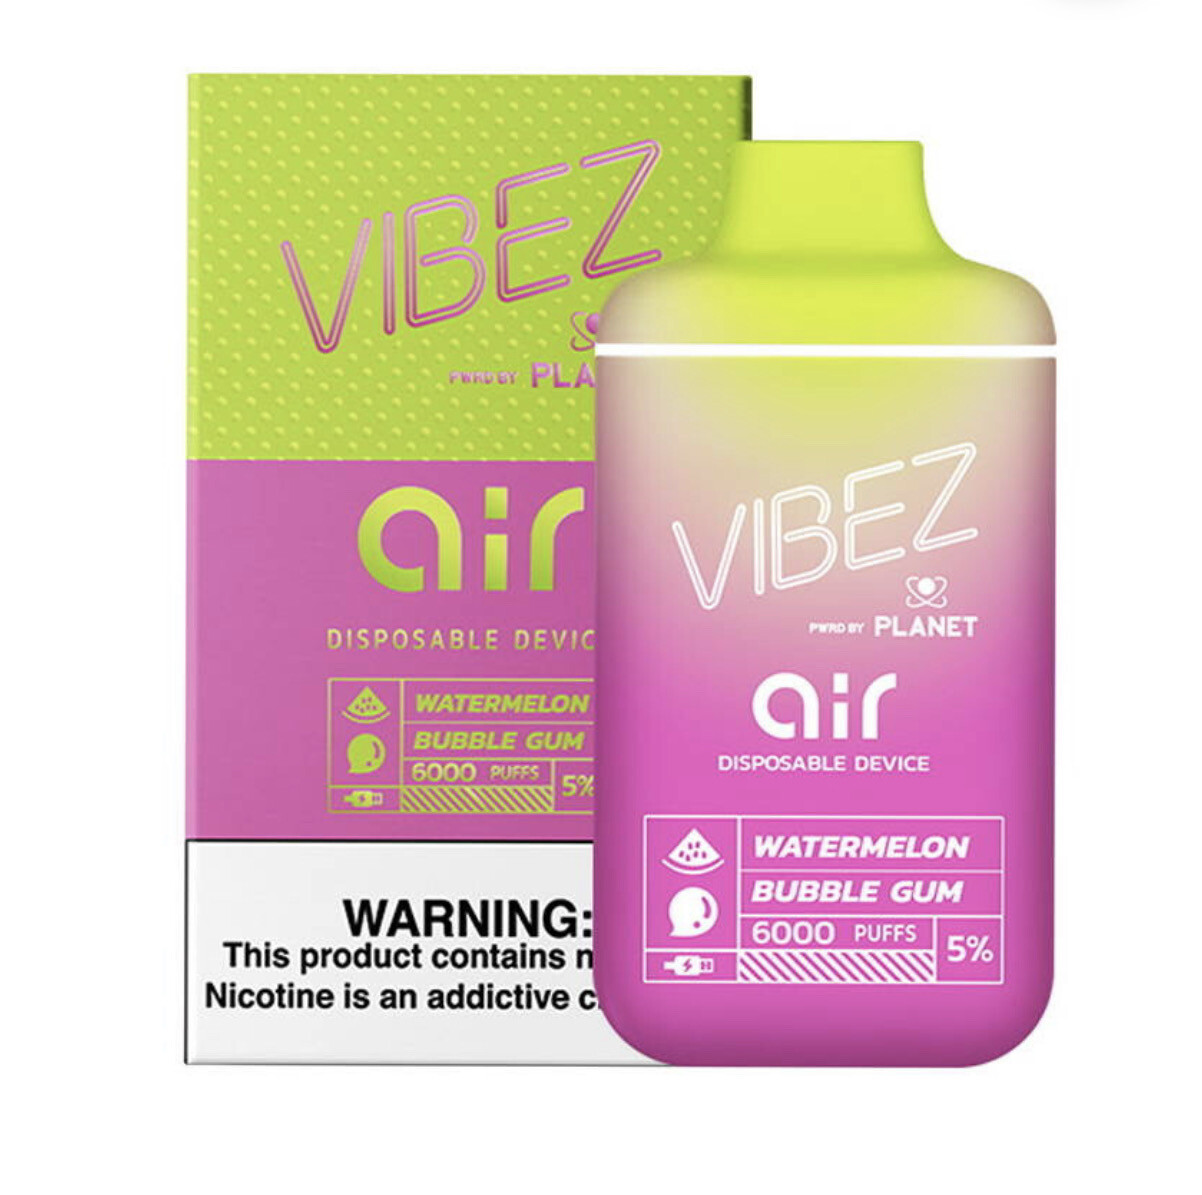 Vibez Air 5% Watermelon Bubble Gum